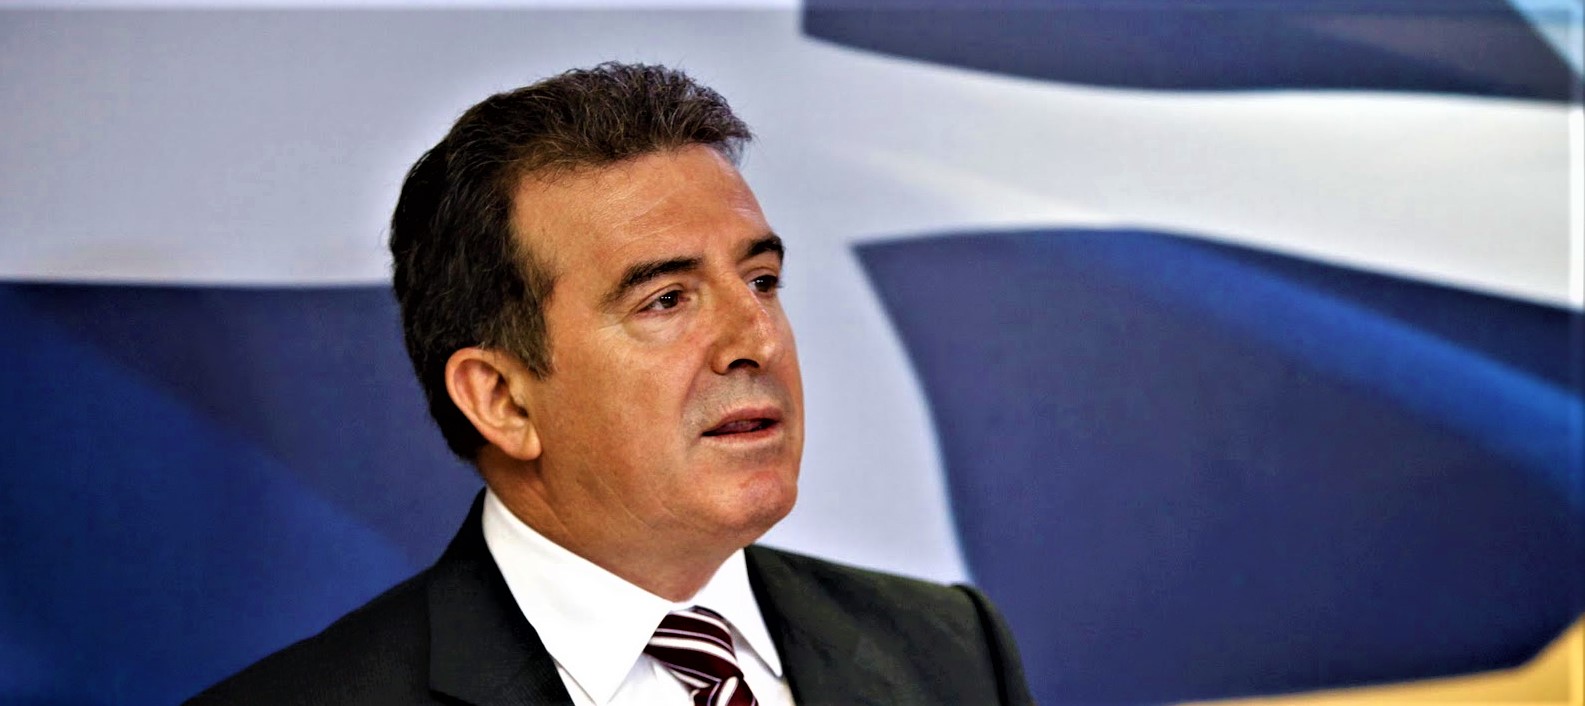 Ο Μιχάλης Χρυσοχοΐδης νέος υπουργός Προστασίας του Πολίτη – Αποδέχθηκε πρόταση του Κυριάκου Μητσοτάκη